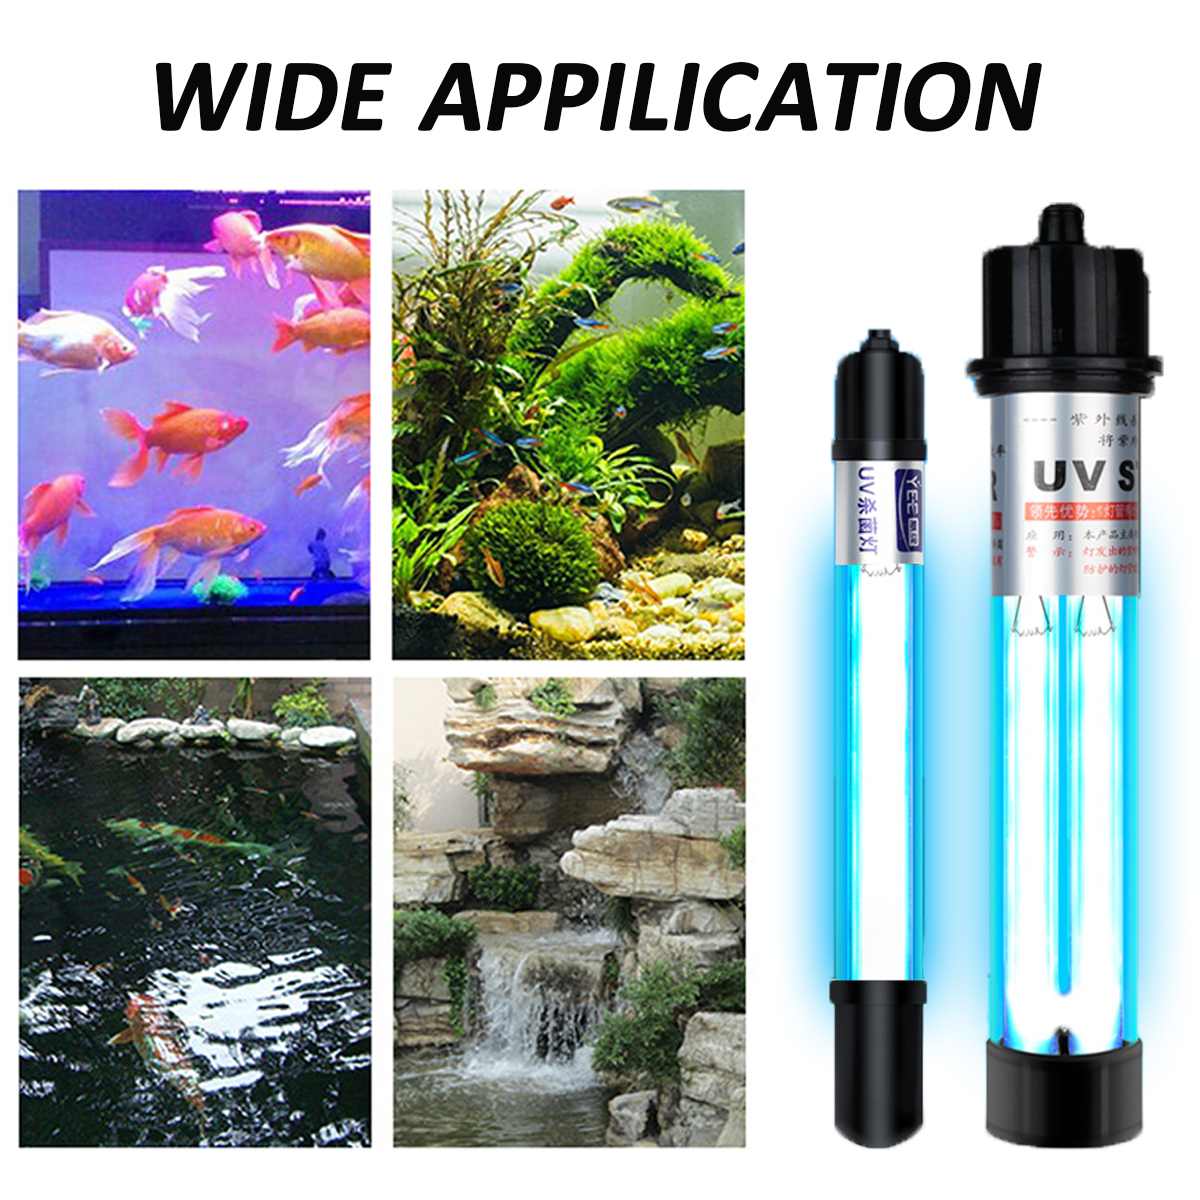 Đèn UV 40W Sterilization King Bóng Kép cao cấp, diệt tảo, diệt khuẩn cho bể cá, hồ cá, hồ thủy sinh siêu sạch ( Trắng)